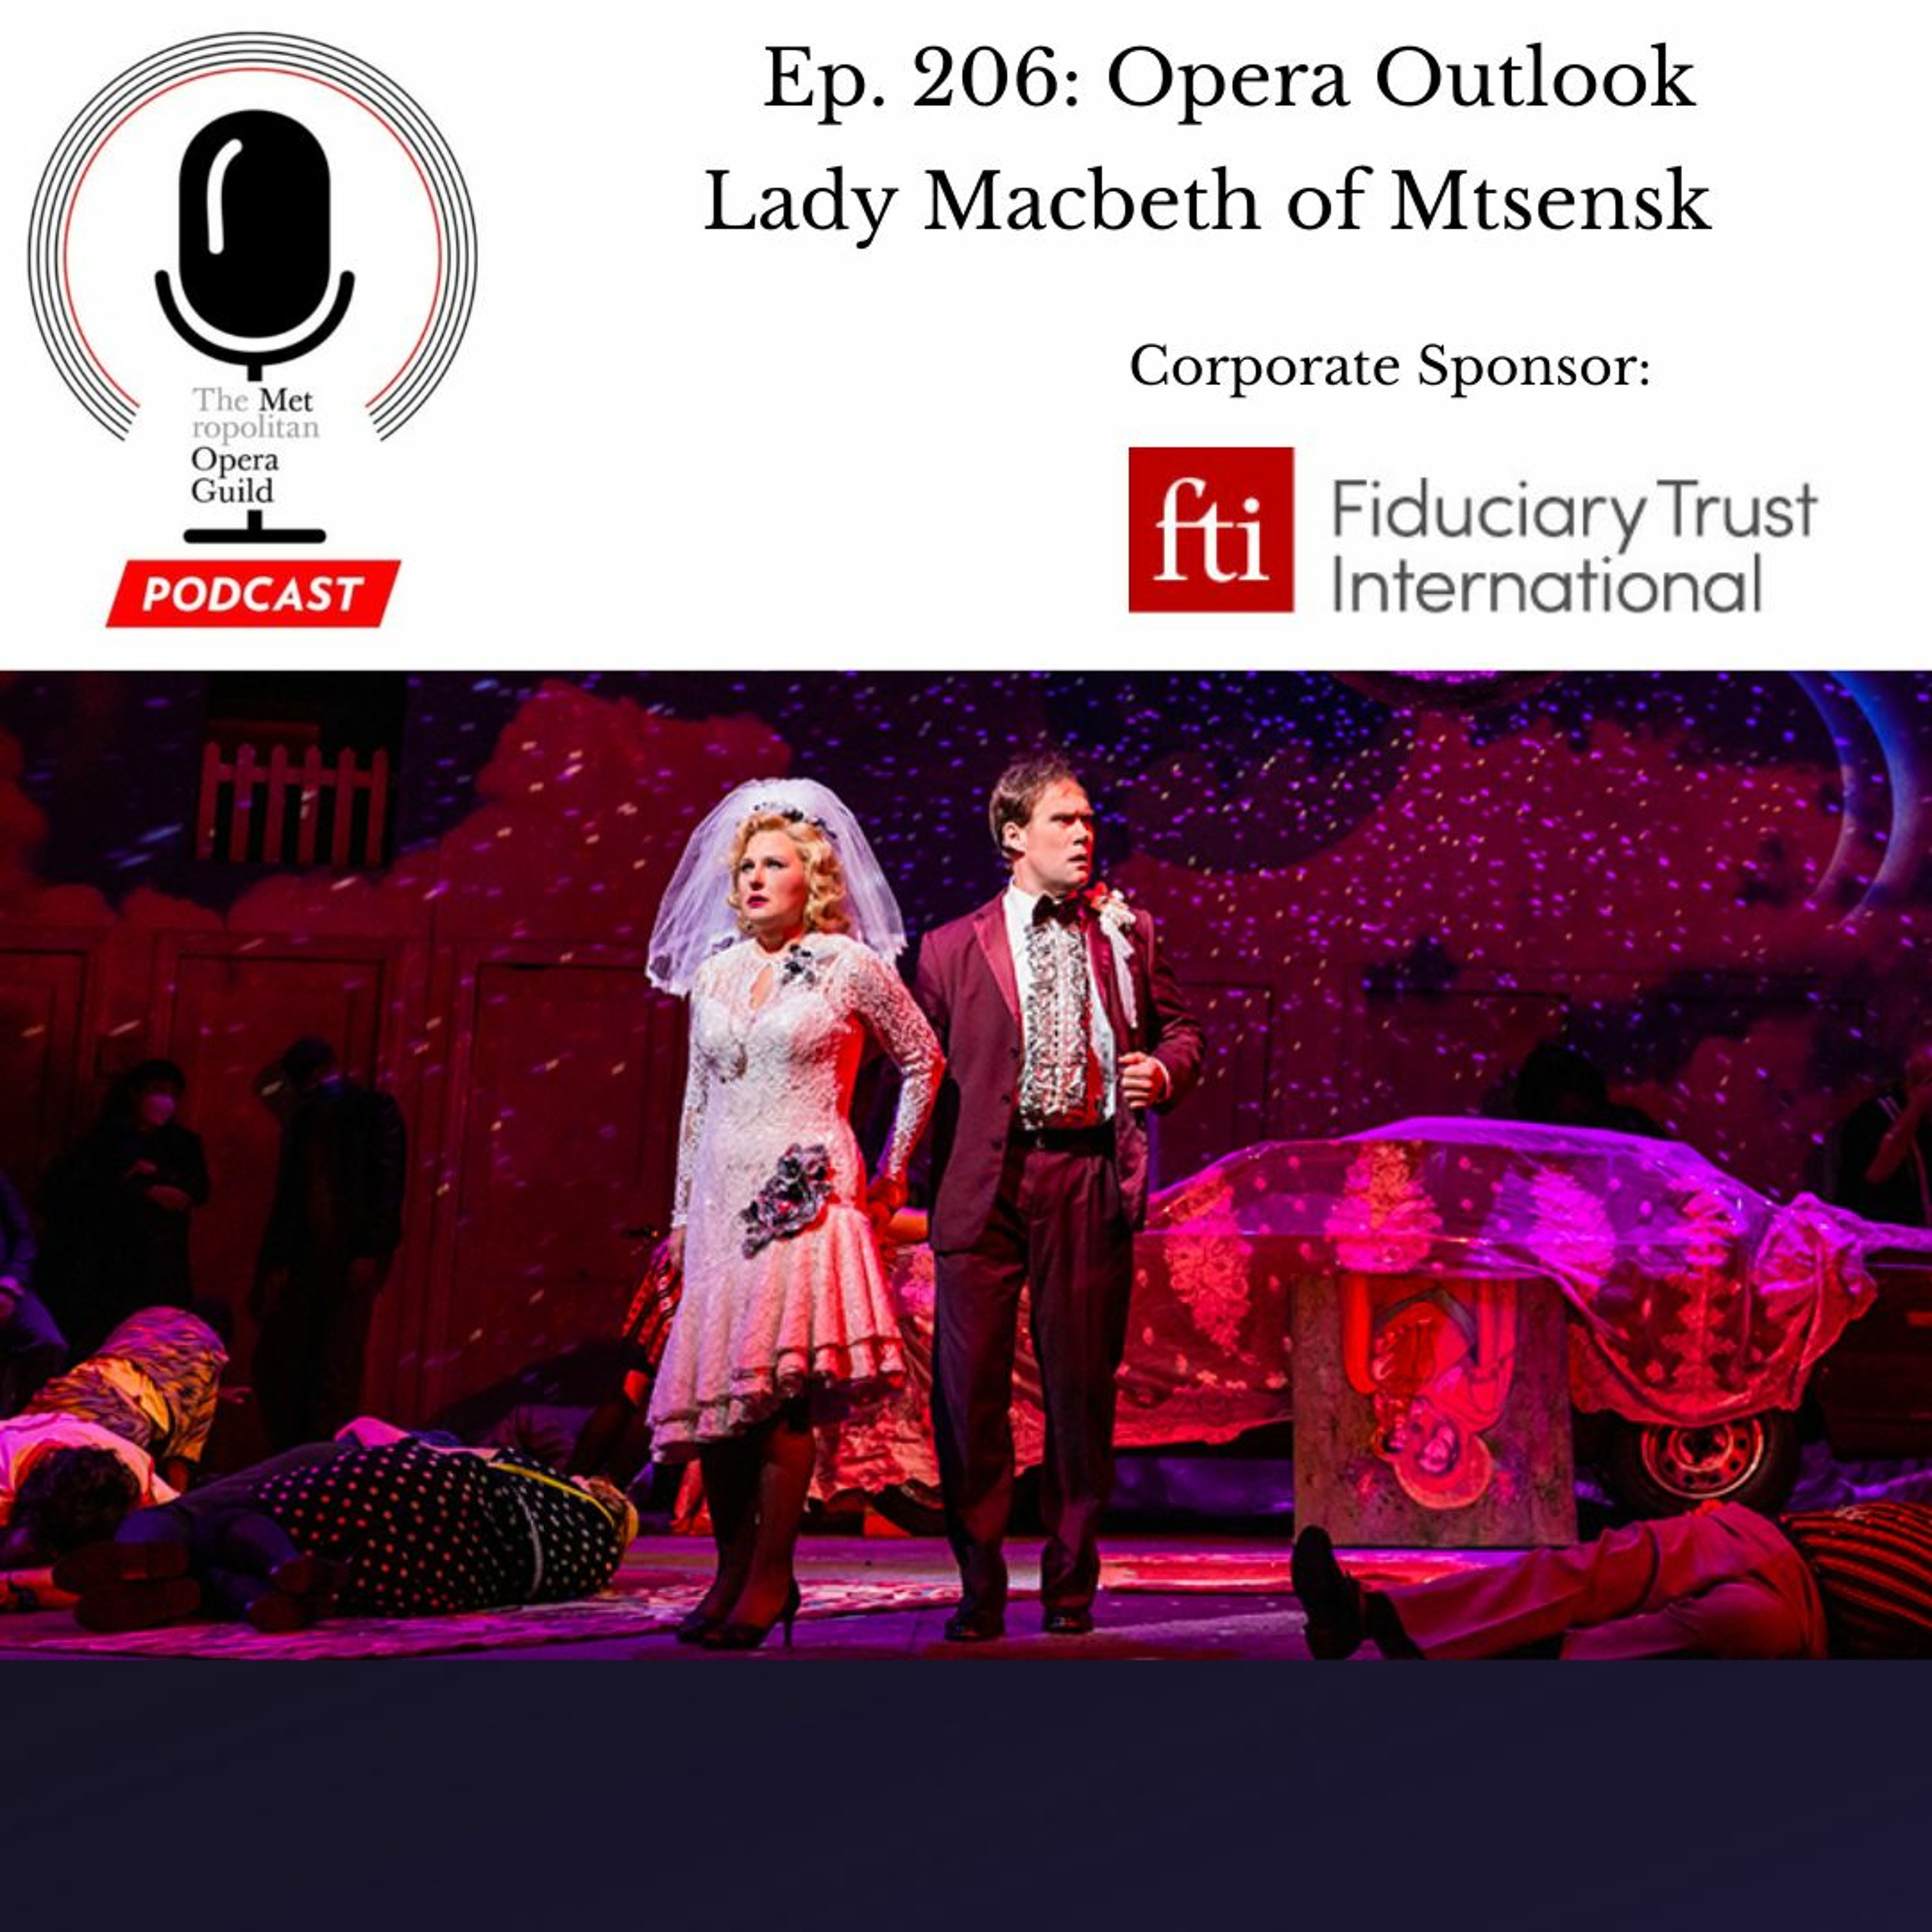 Ep. 206: Opera Outlook Lady Macbeth of Mtsensk